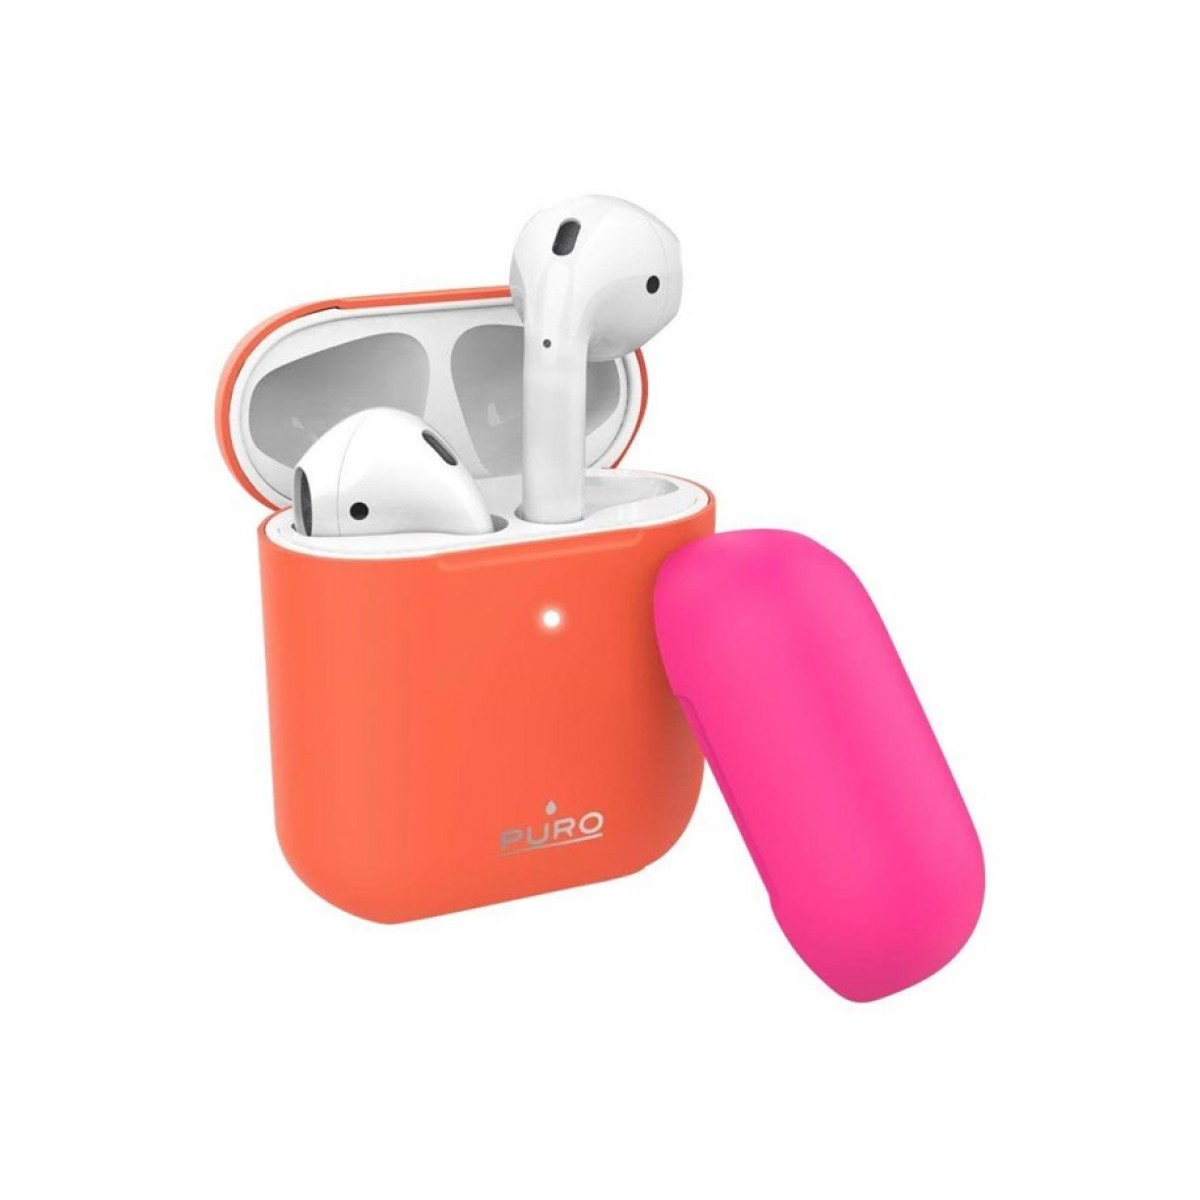 Θηκη για Apple Airpods Puro Icon Fluo Orange APCASE2FLUOORA